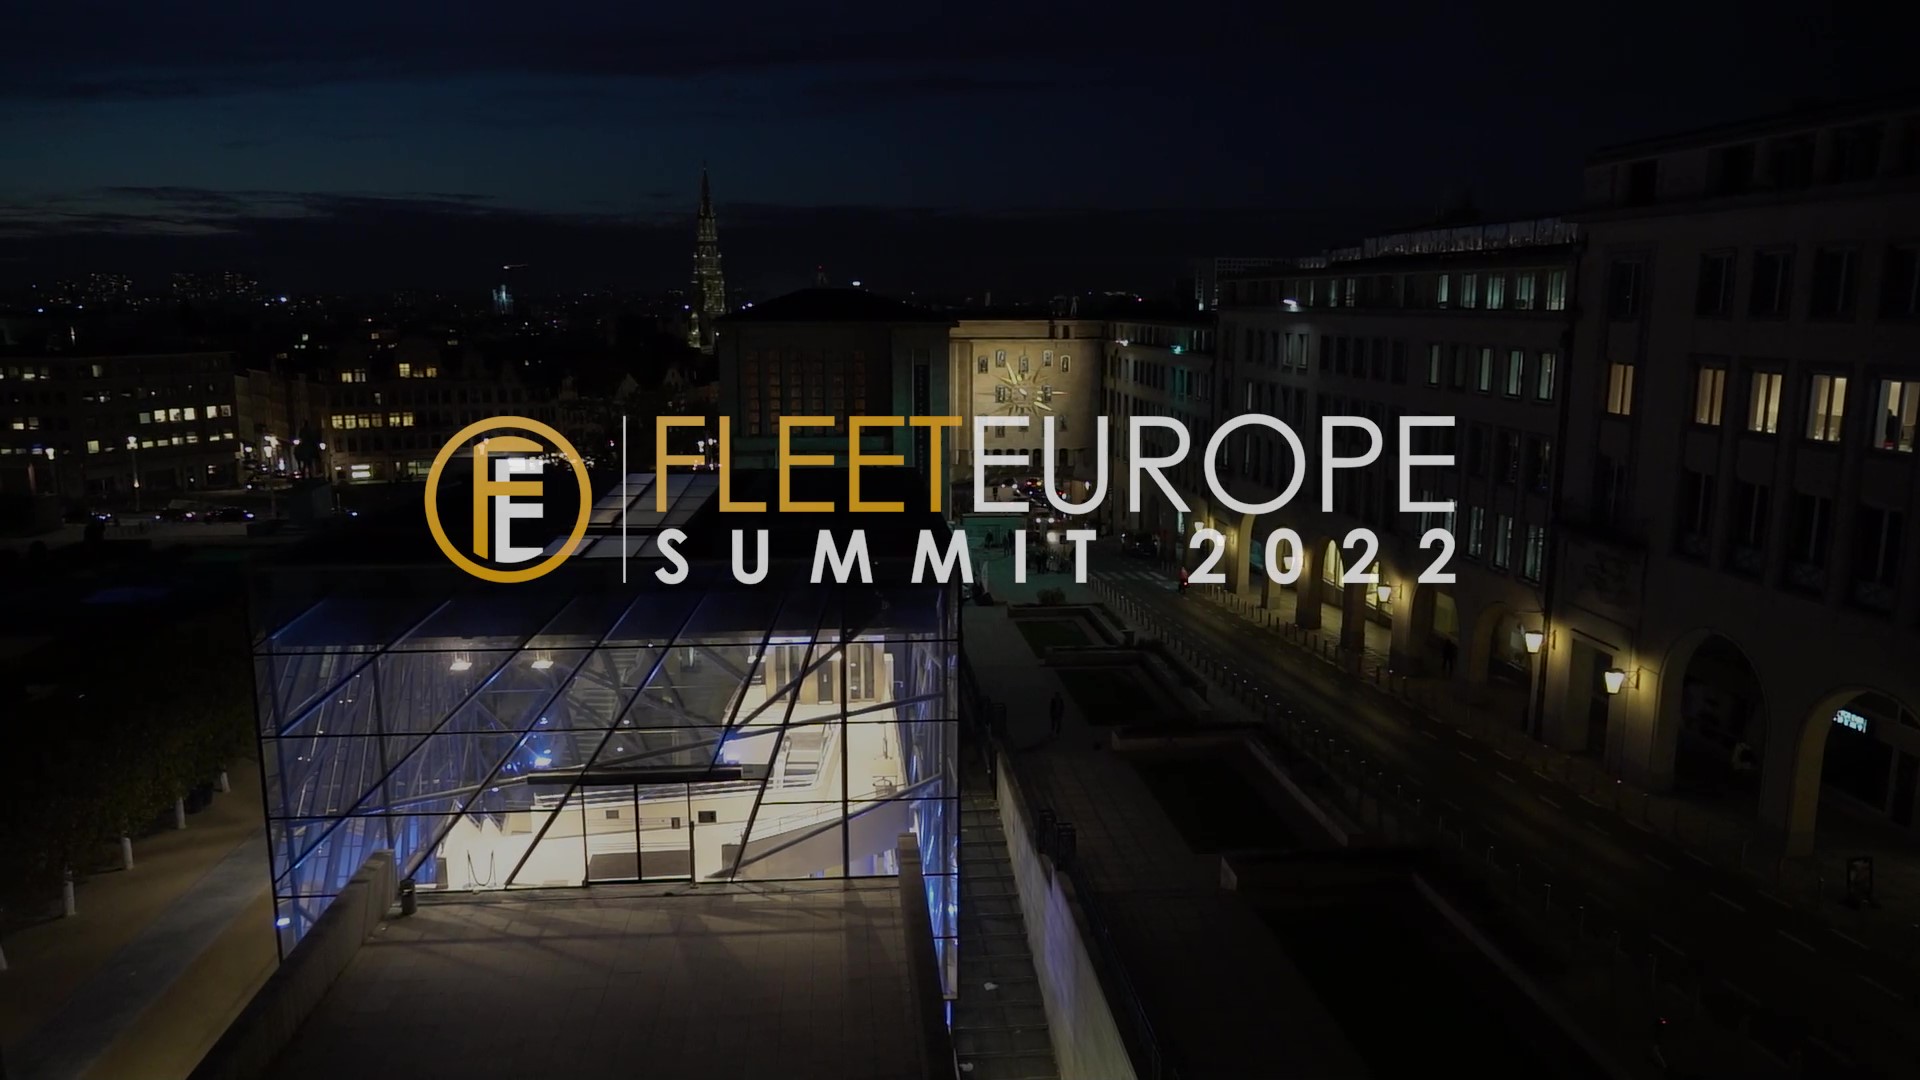 Fleet Europe – SUMMIT 2021